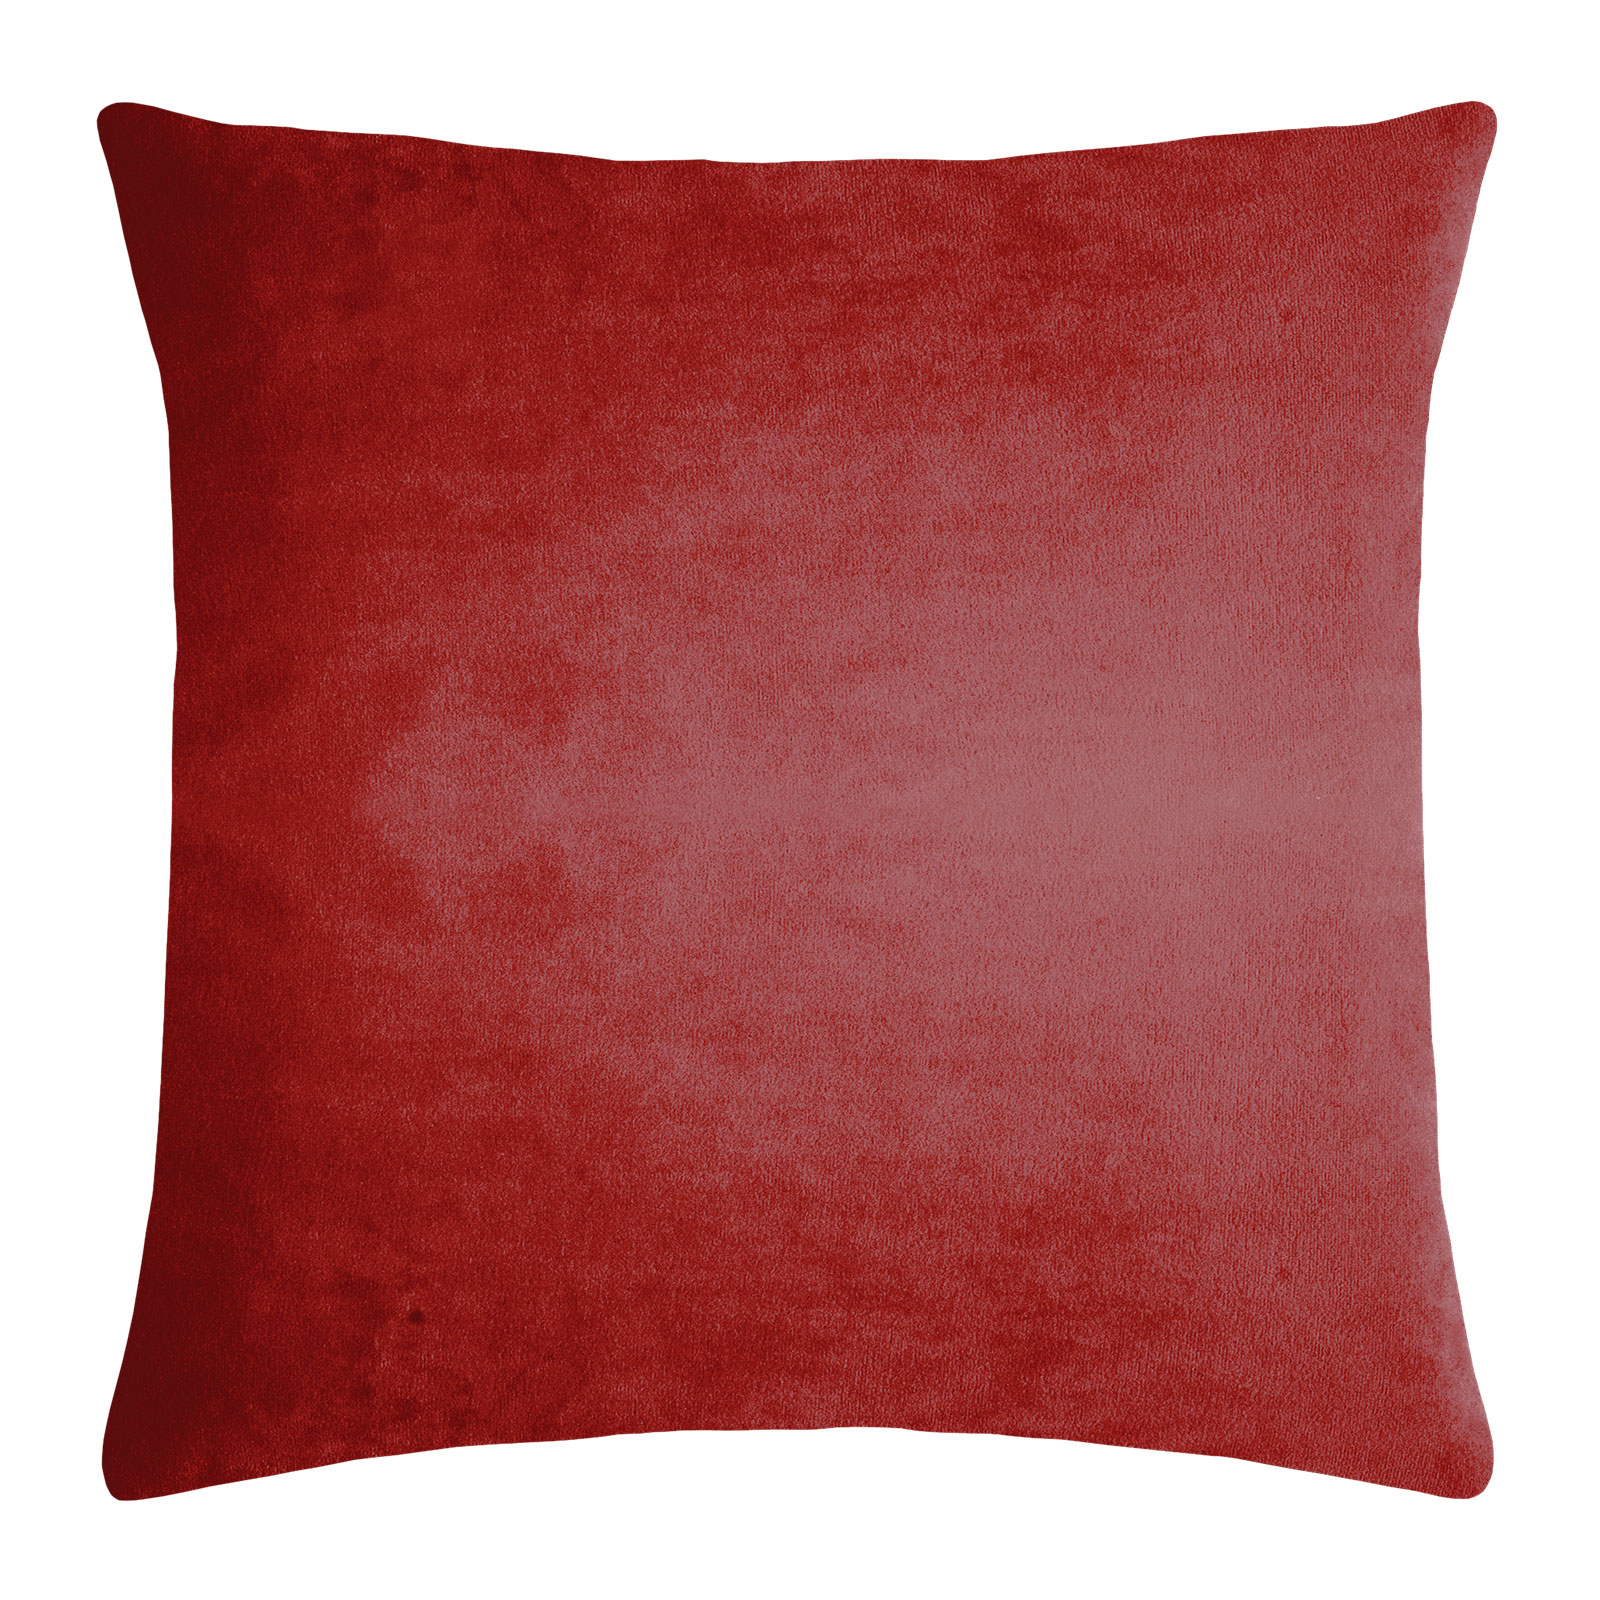 Pad Design Elegance Kissen mit Füllung 50,0x50,0cm red